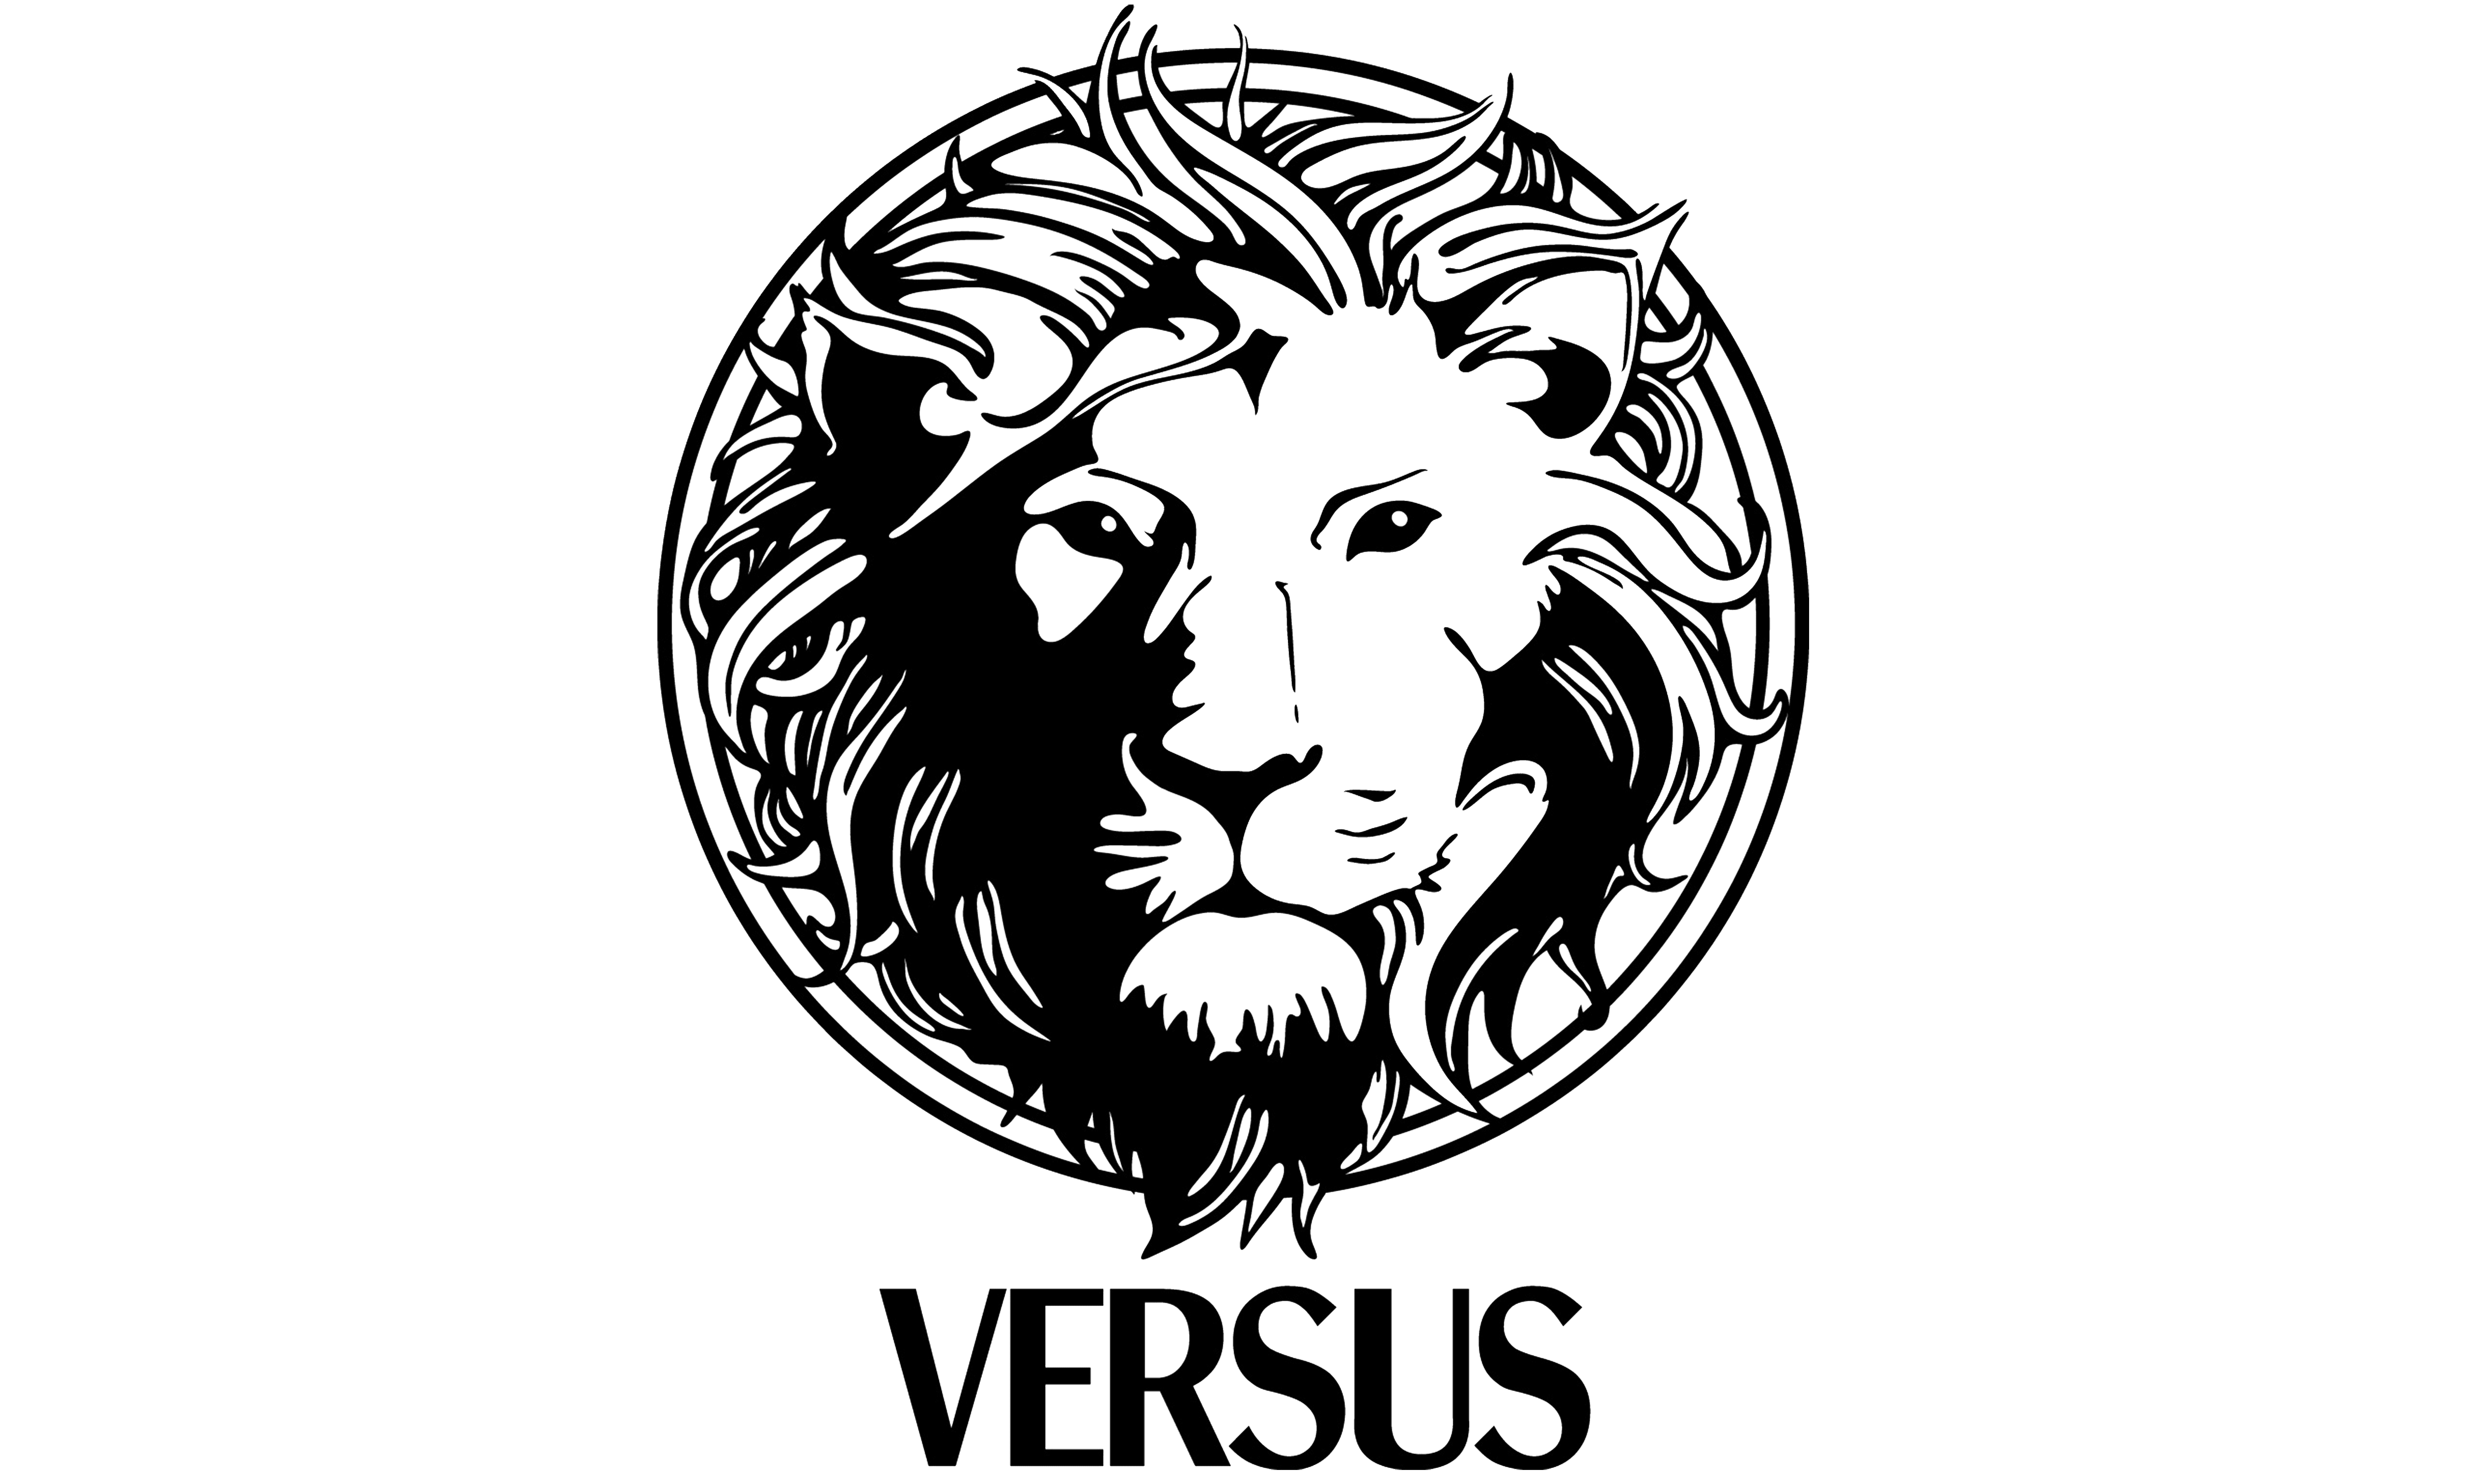 versace logo png